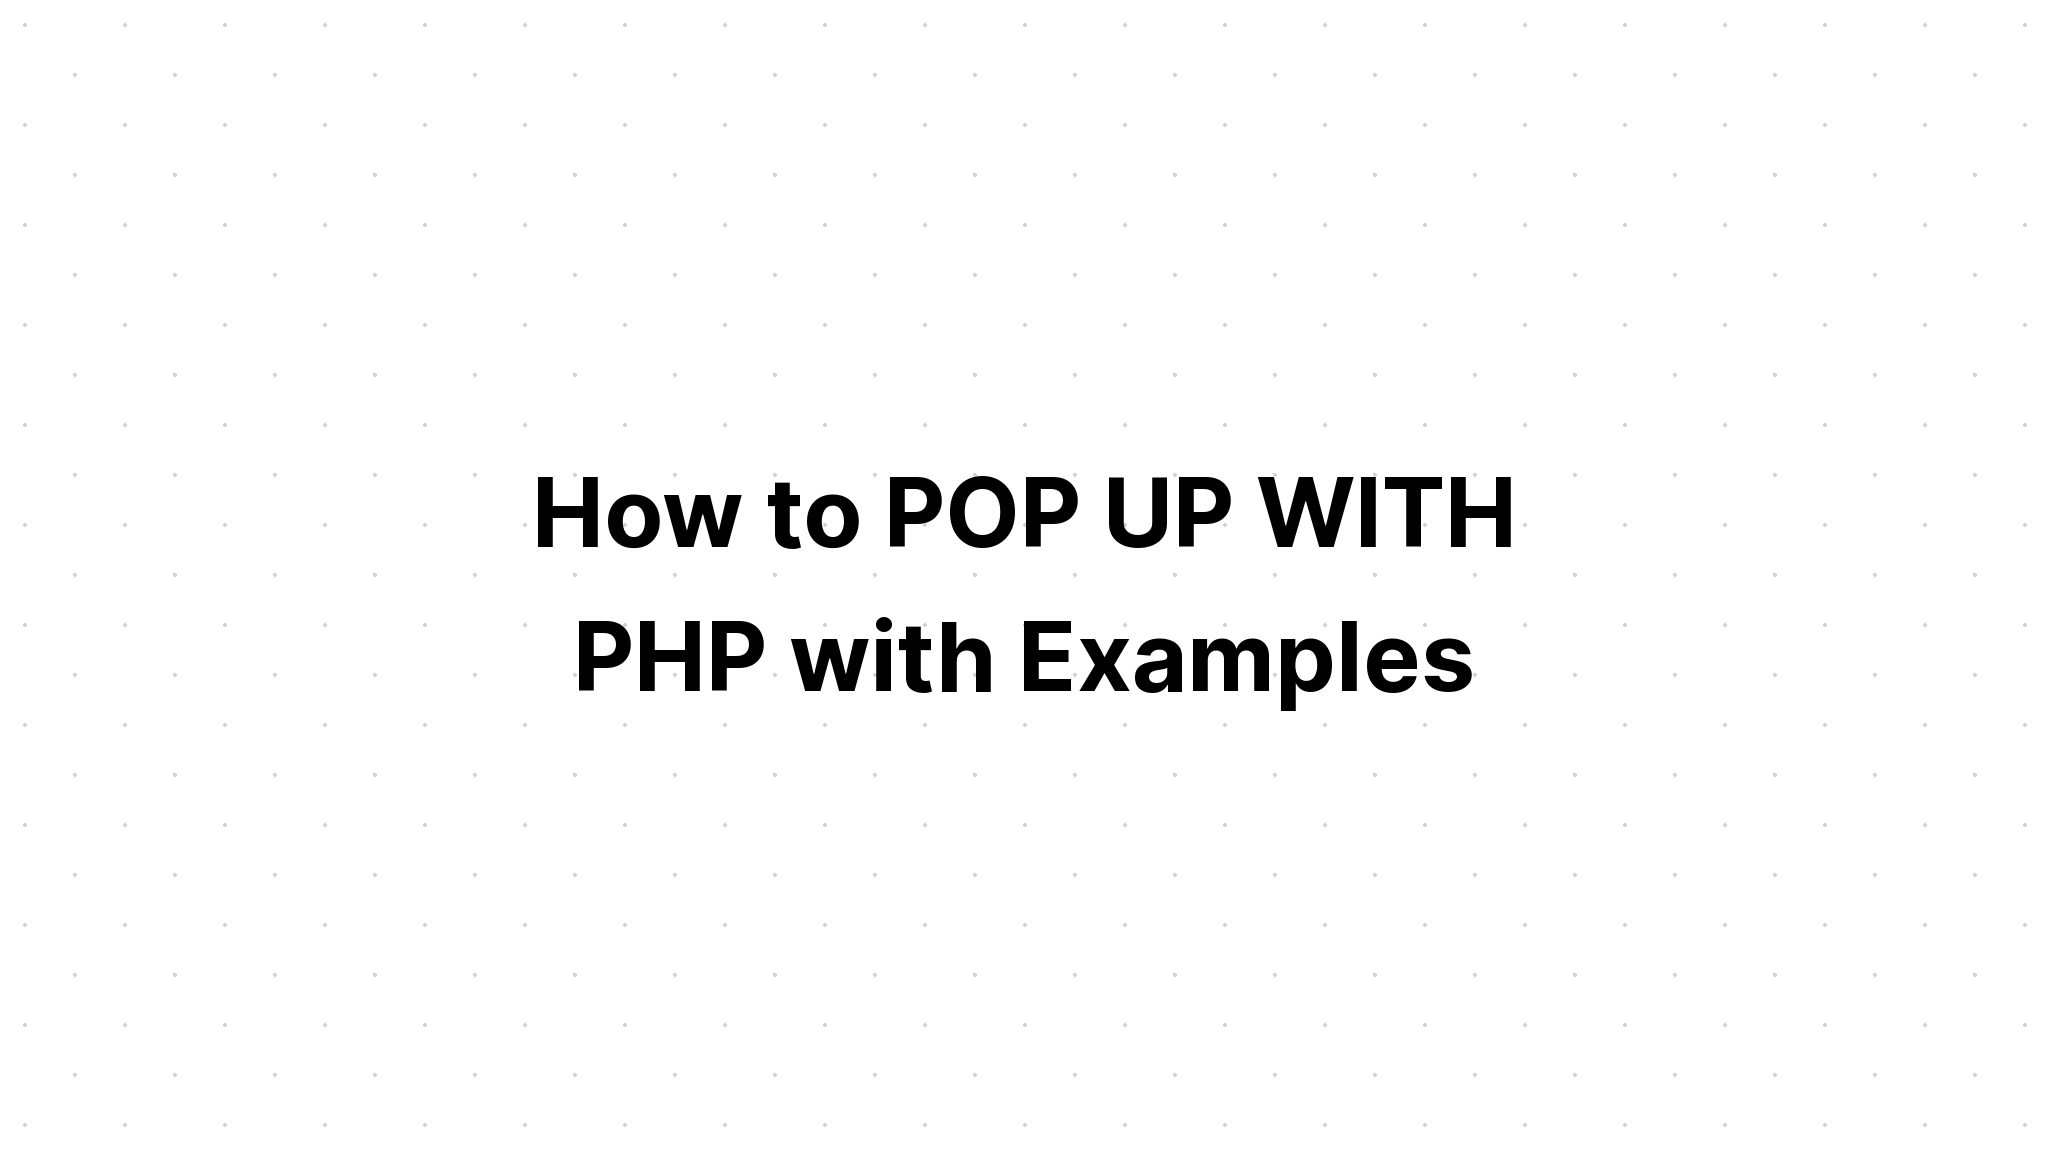 Cara POP UP DENGAN PHP dengan Contohnya